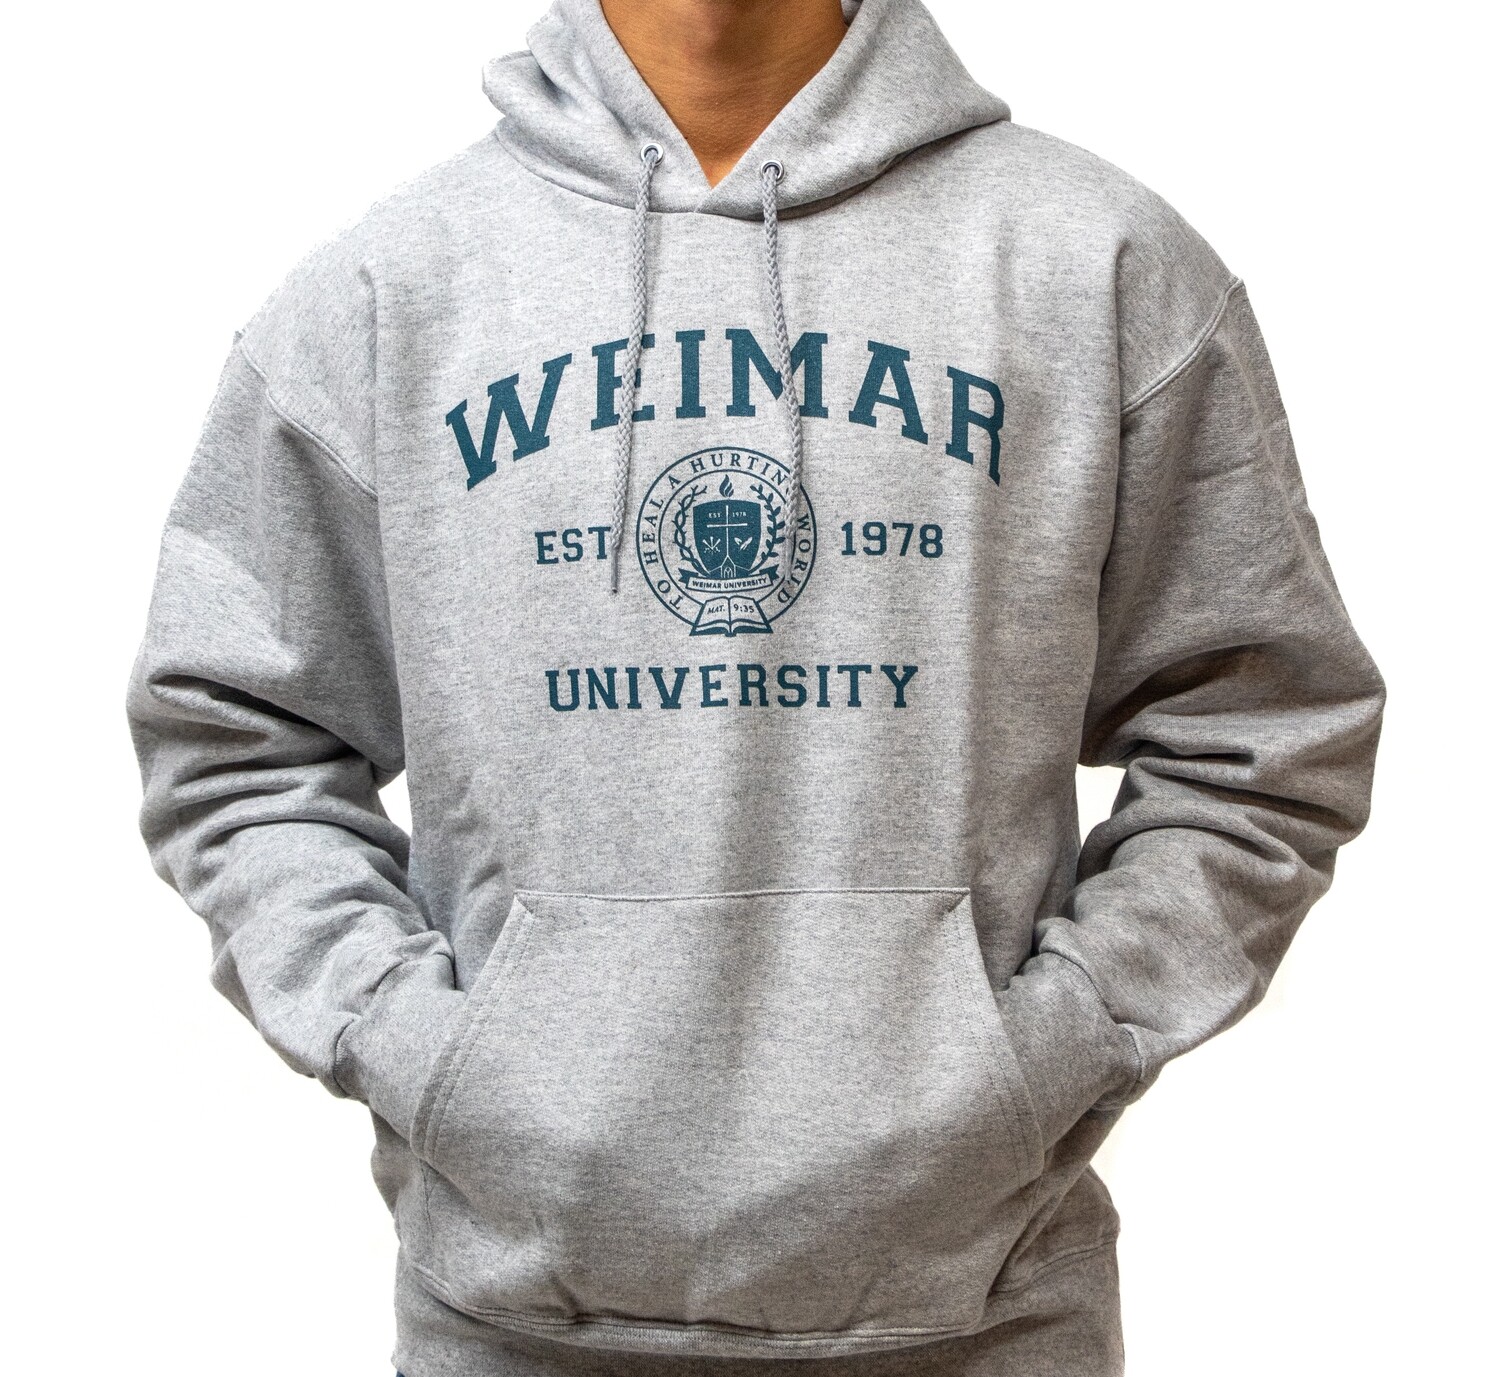 Weimar University Hoodies (C2)